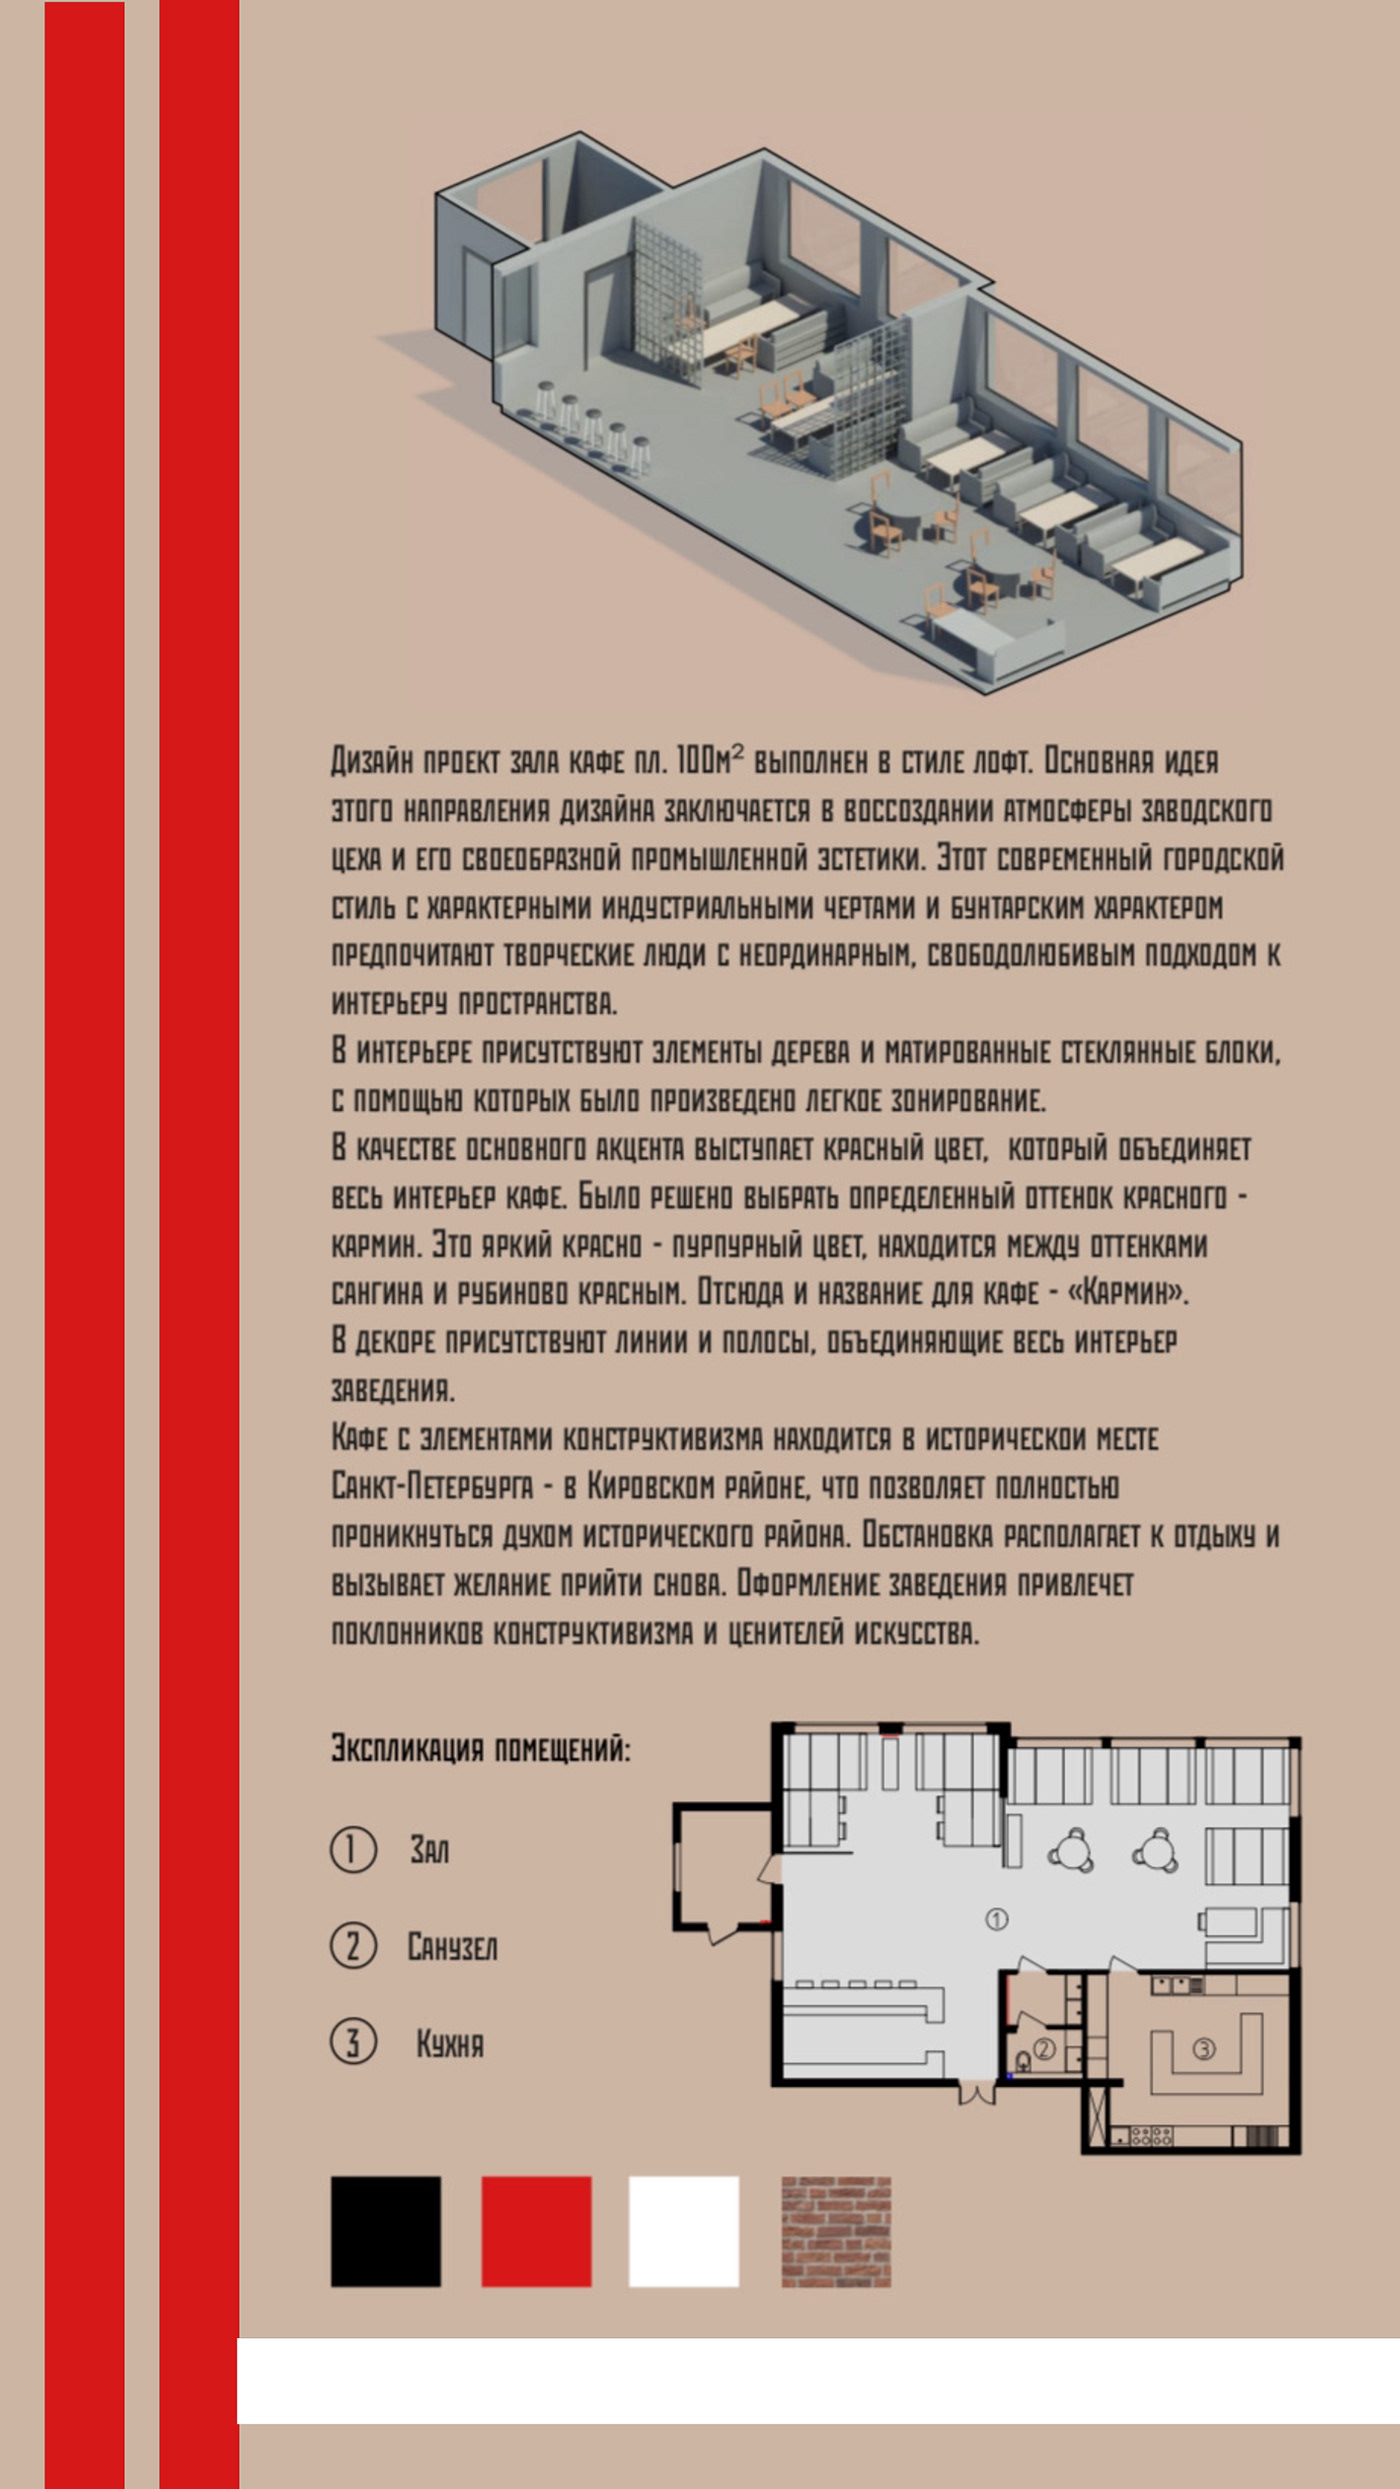 кафе дизайн интерьера revit Автокад AutoCAD ArchiCAD 3ds max визуализация красный конструктивизм дизайн проектирование Дизайн пространства нанокад Karmin